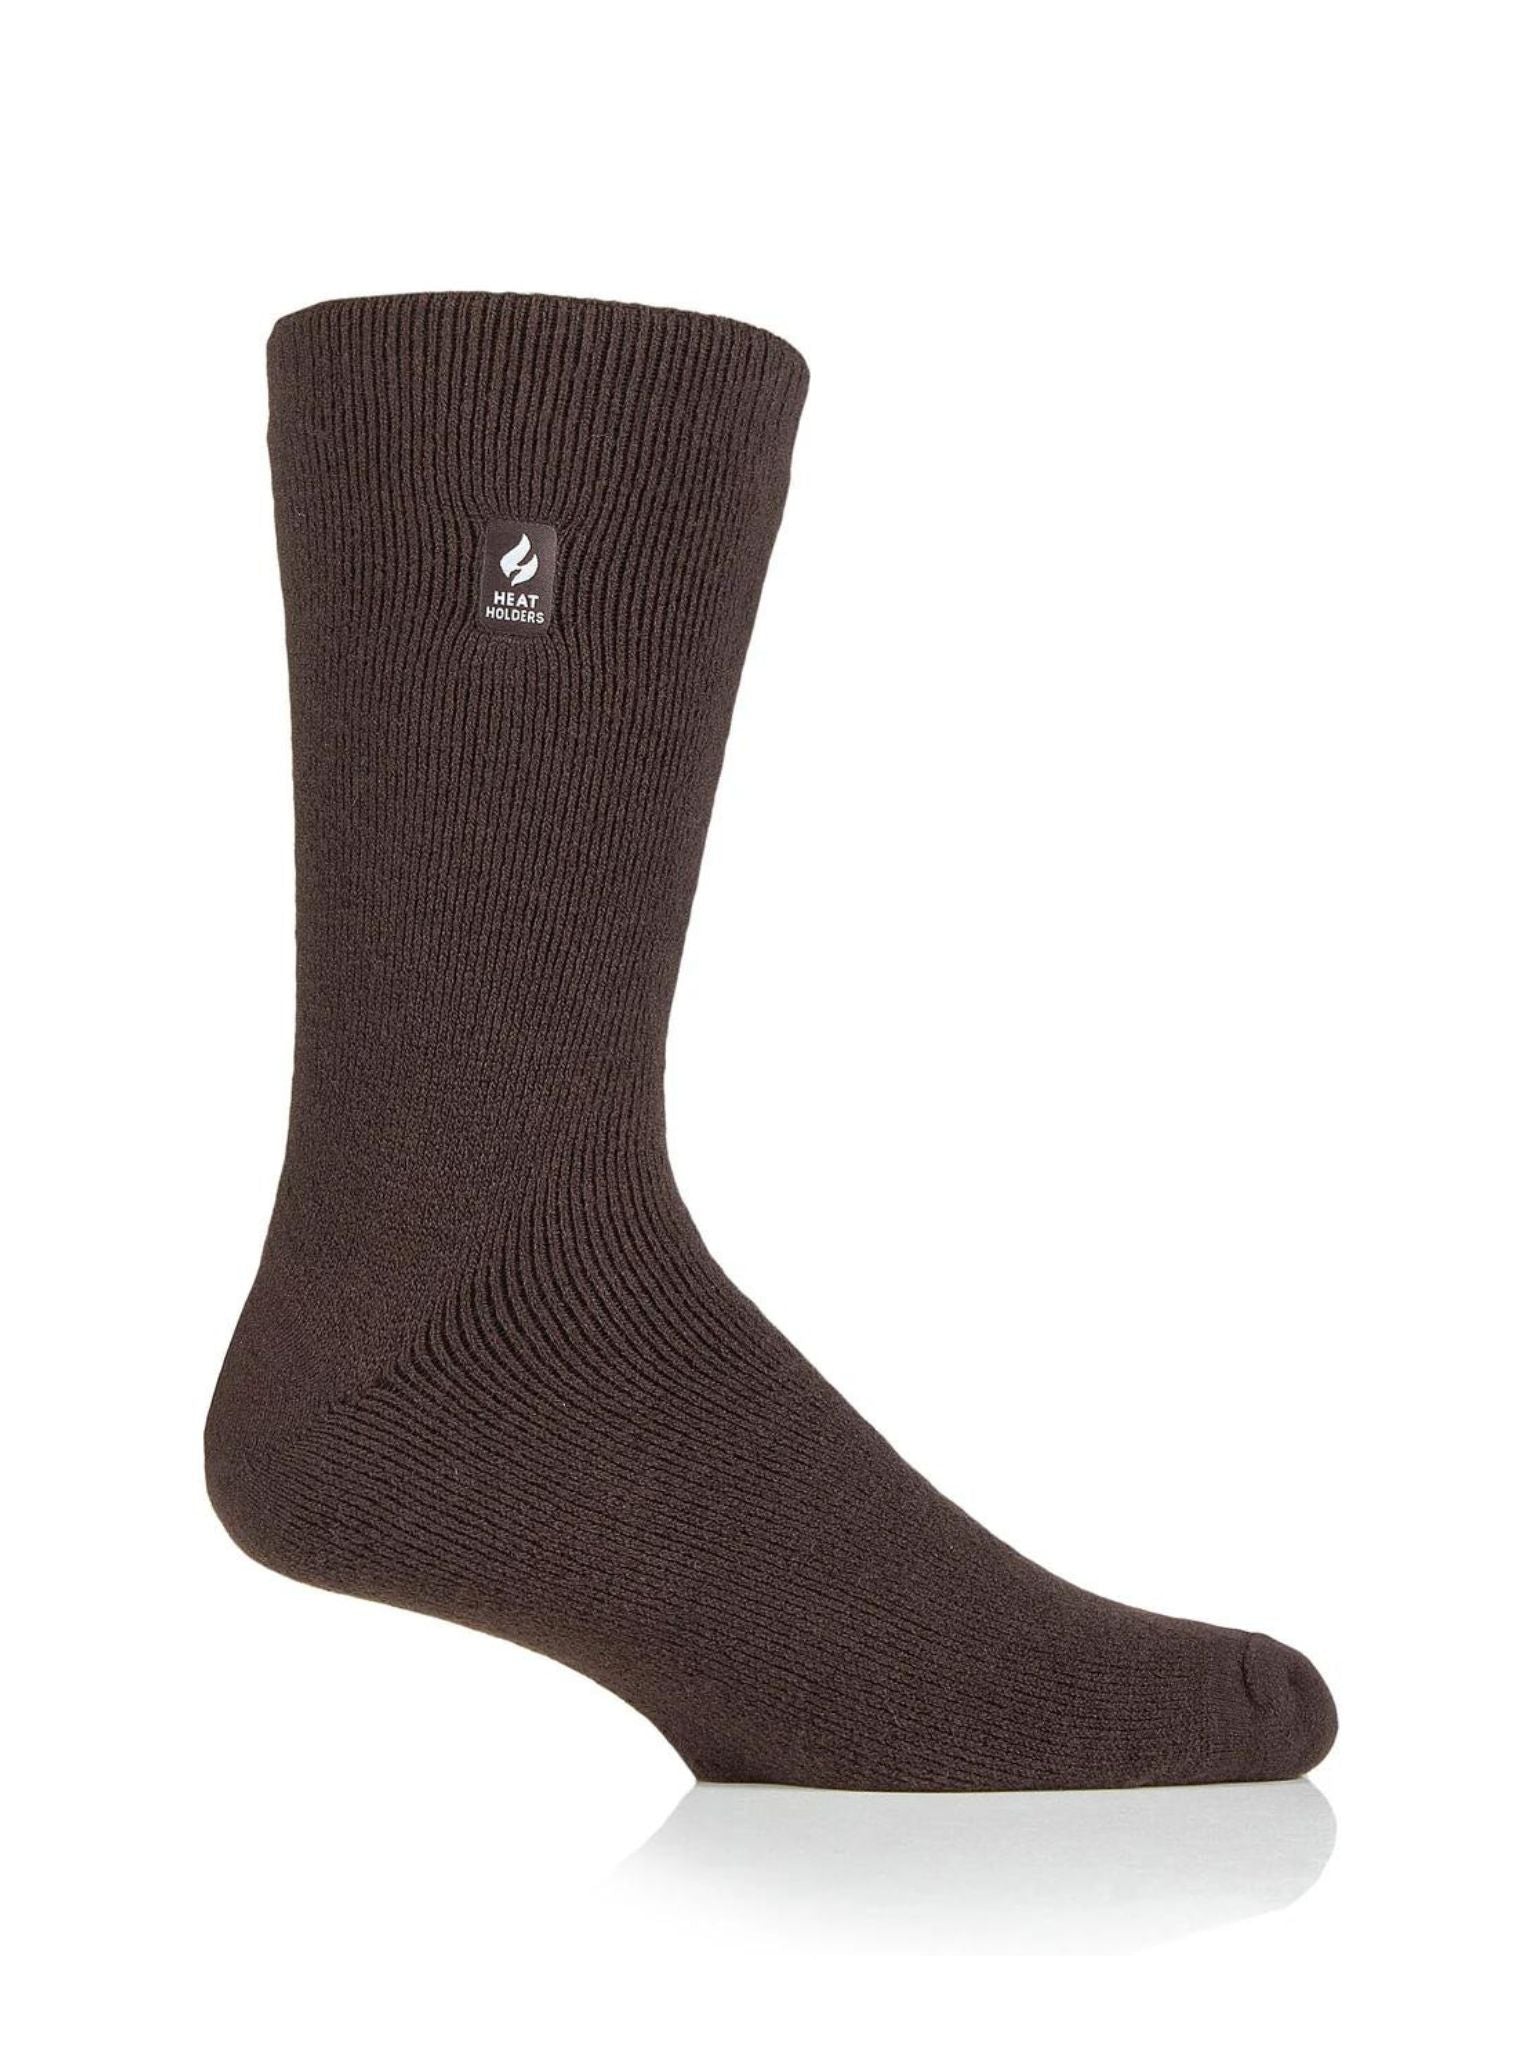 HEAT HOLDERS LITE Thermal Merino Wool Blend Sock - Men's